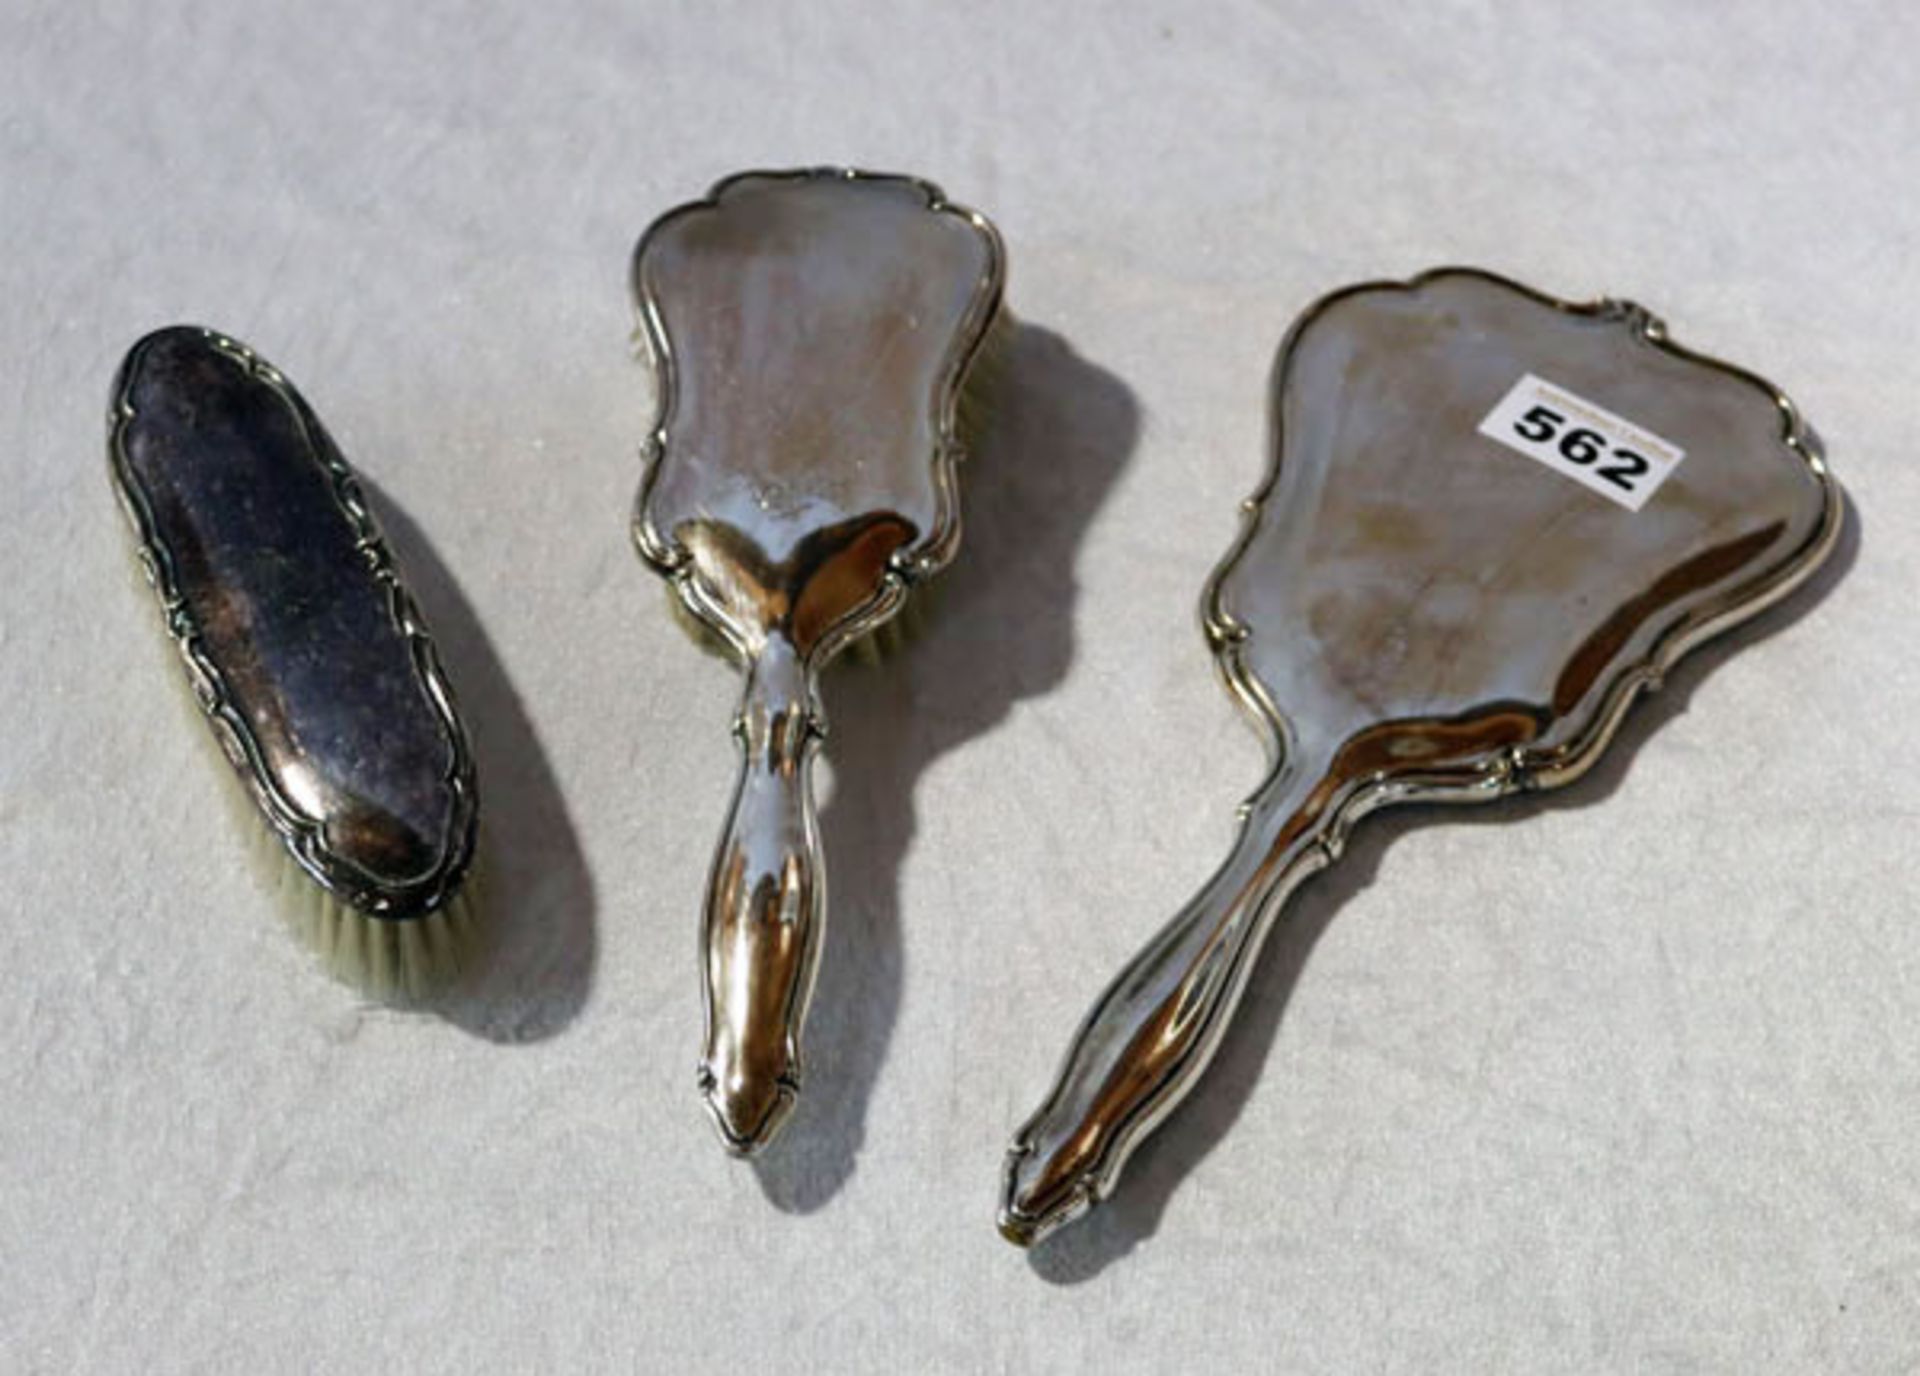 Bürstengarnitur, 3-teilig, 835 Silber, graviert 'Christa', Gebrauchsspuren